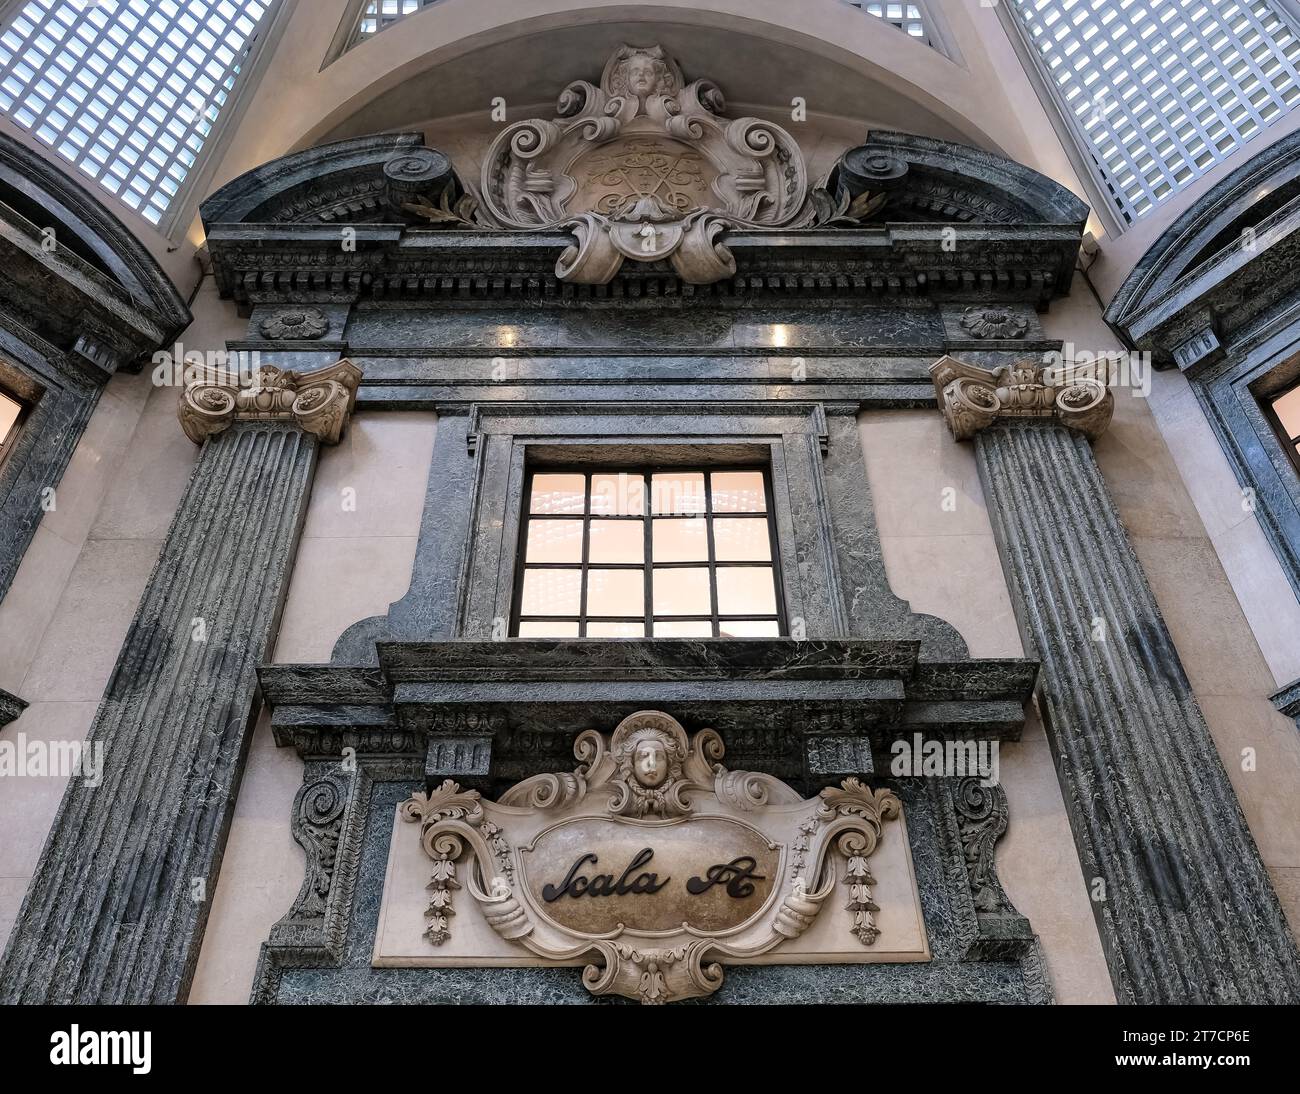 Particolare della Galleria San Federico, edificio commerciale nel centro storico di Torino. Costruito negli anni '1930, ospita numerosi negozi e uffici. Foto Stock